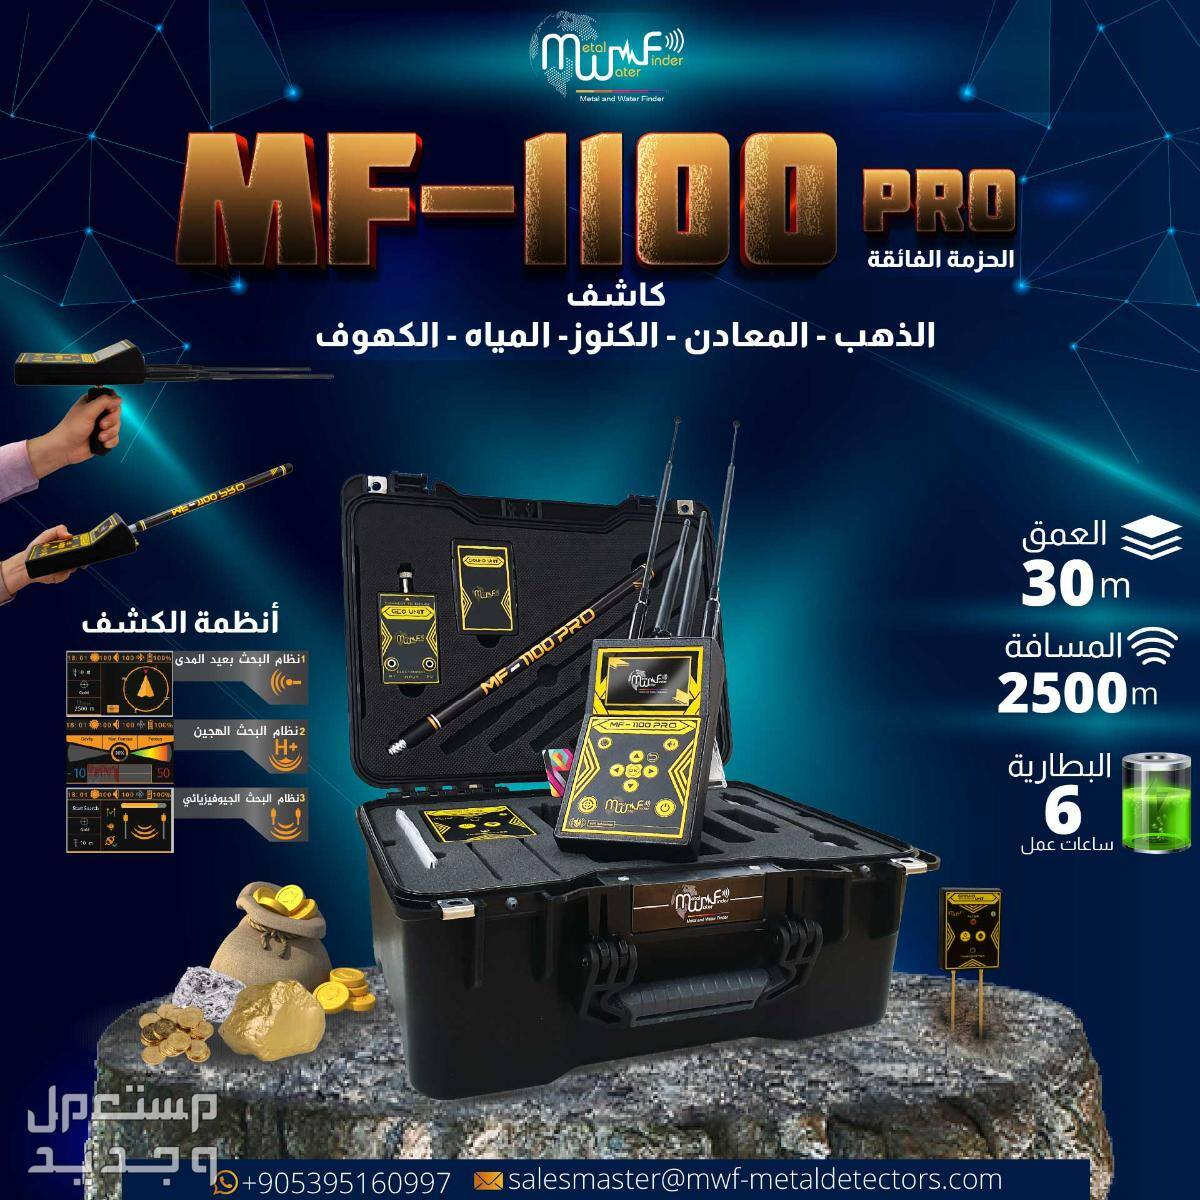 جهاز MF-1100 PRO الرفيق المثالي للمغامرين والباحثين عن الذهب والمياه والكنوز في كل مكان